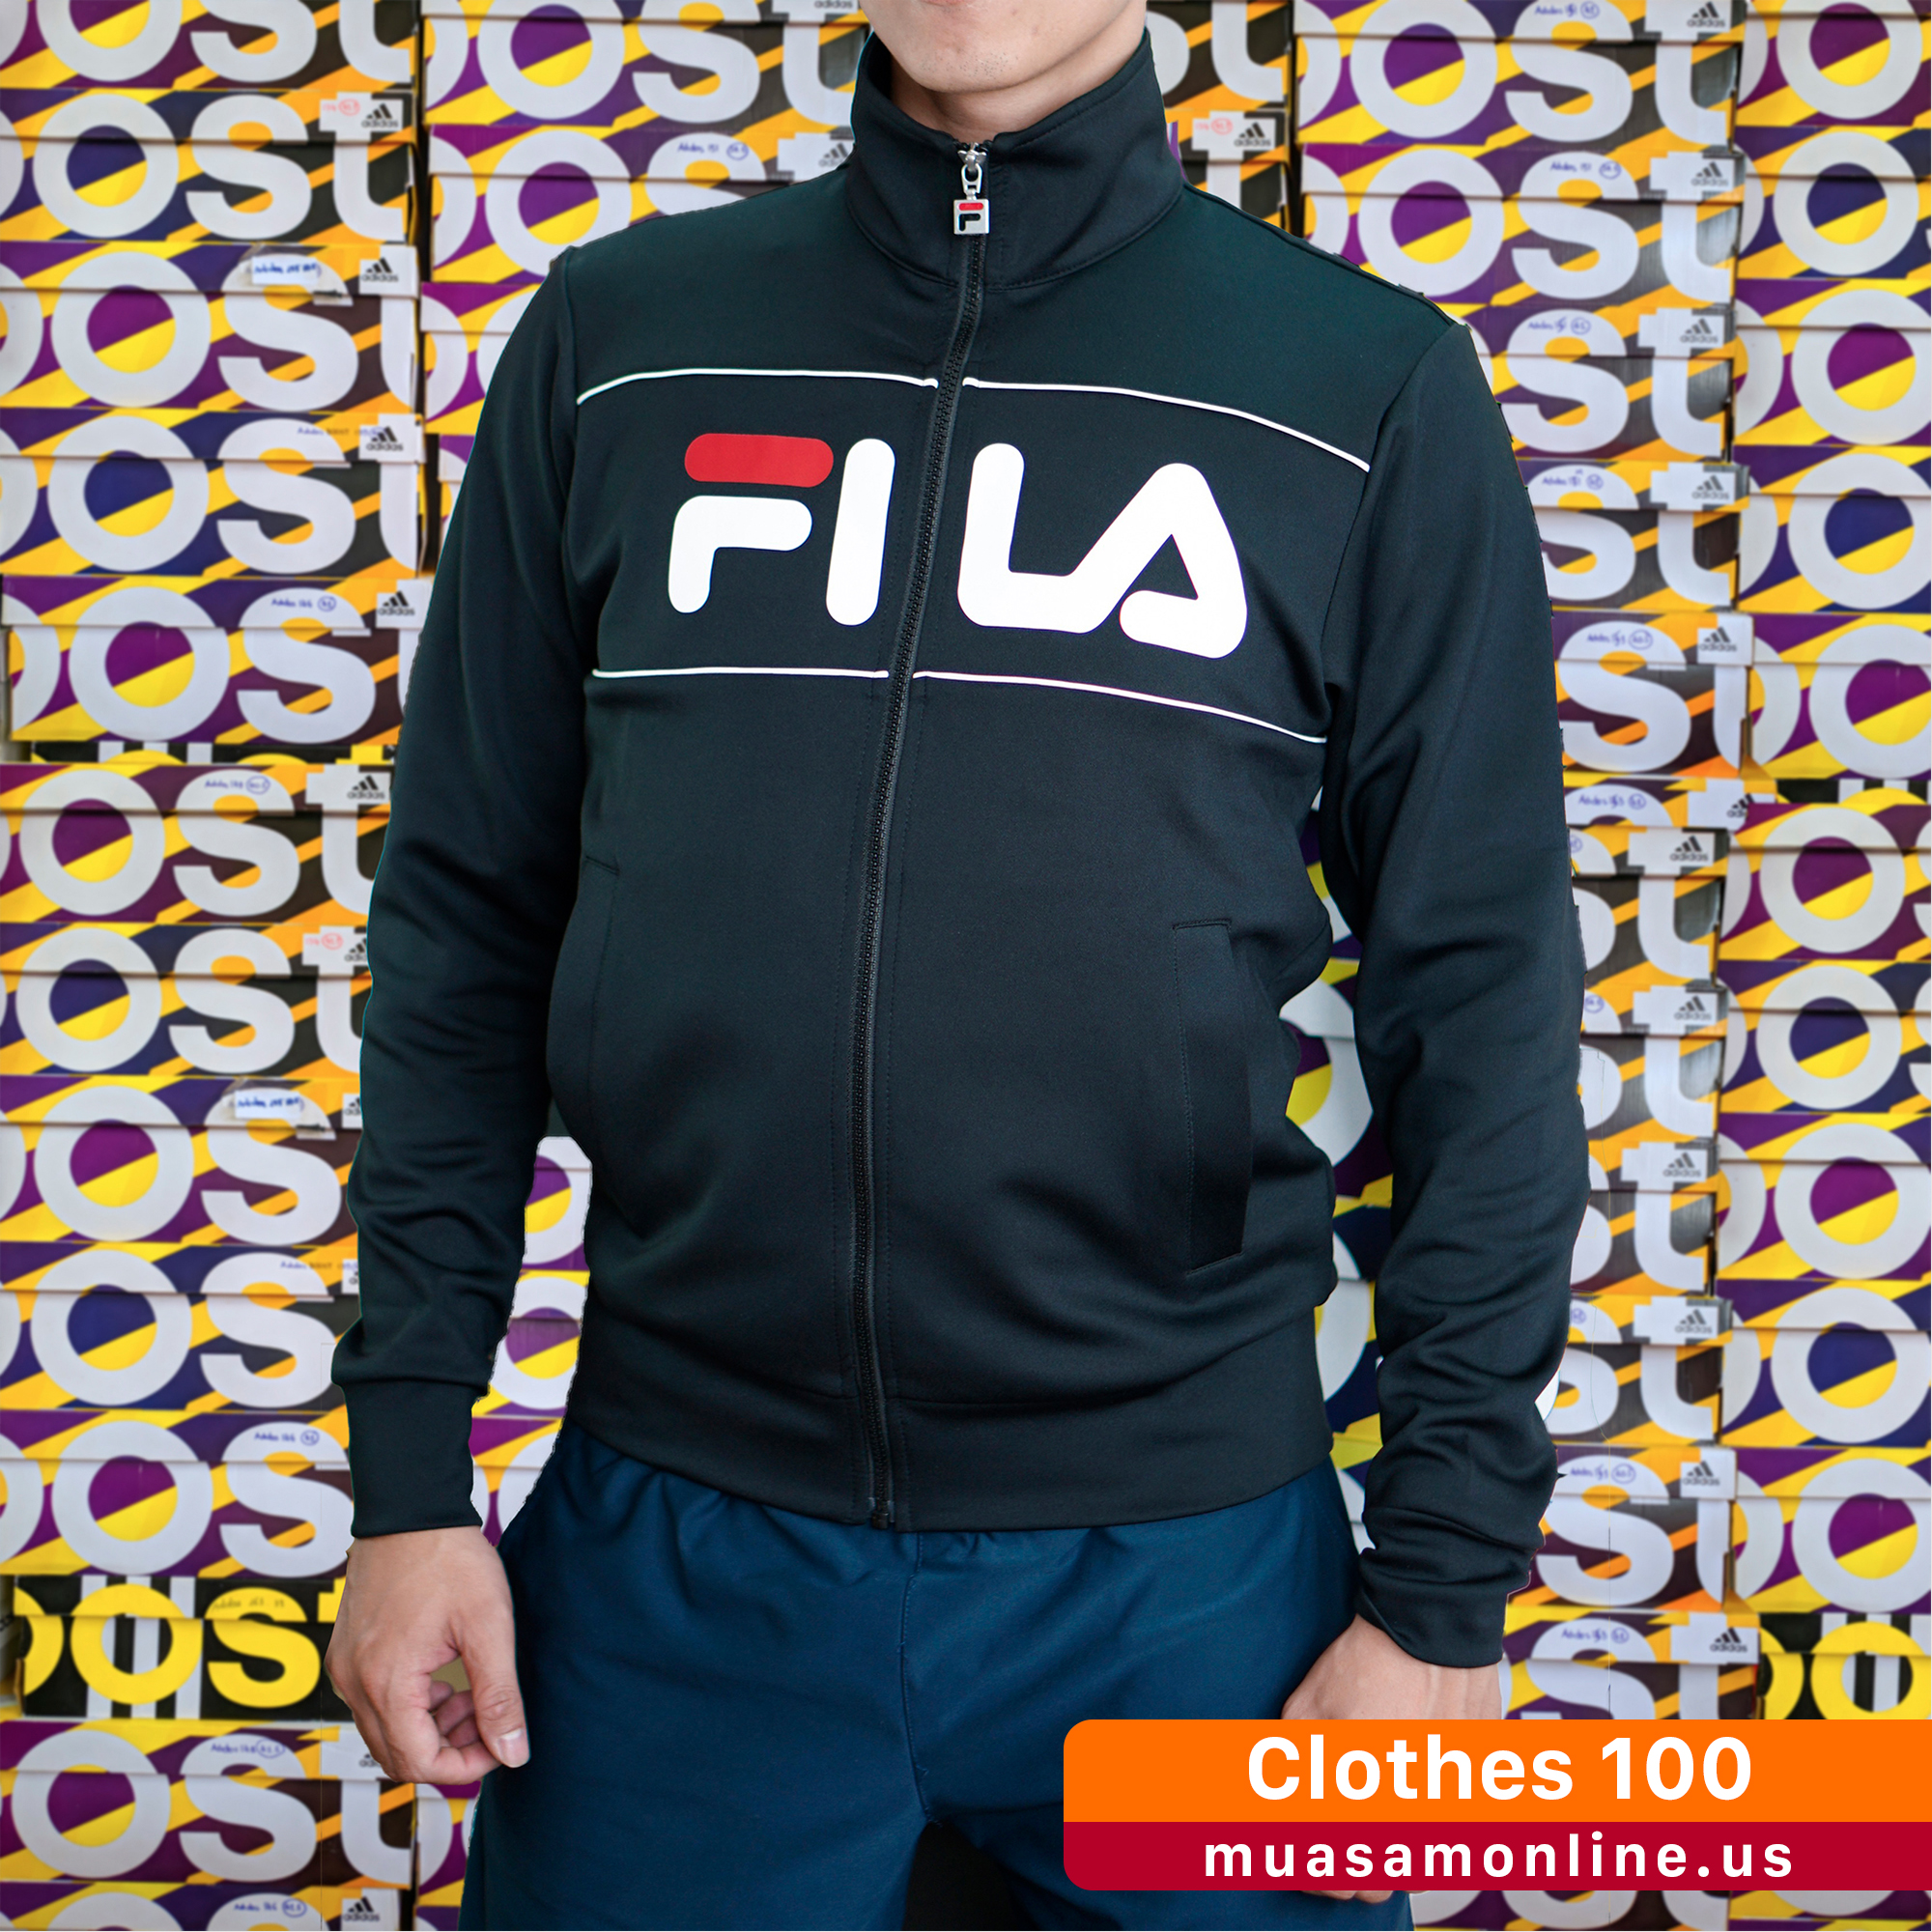 Áo khoác thể thao FILA Adidas chính hãng - Clother 100